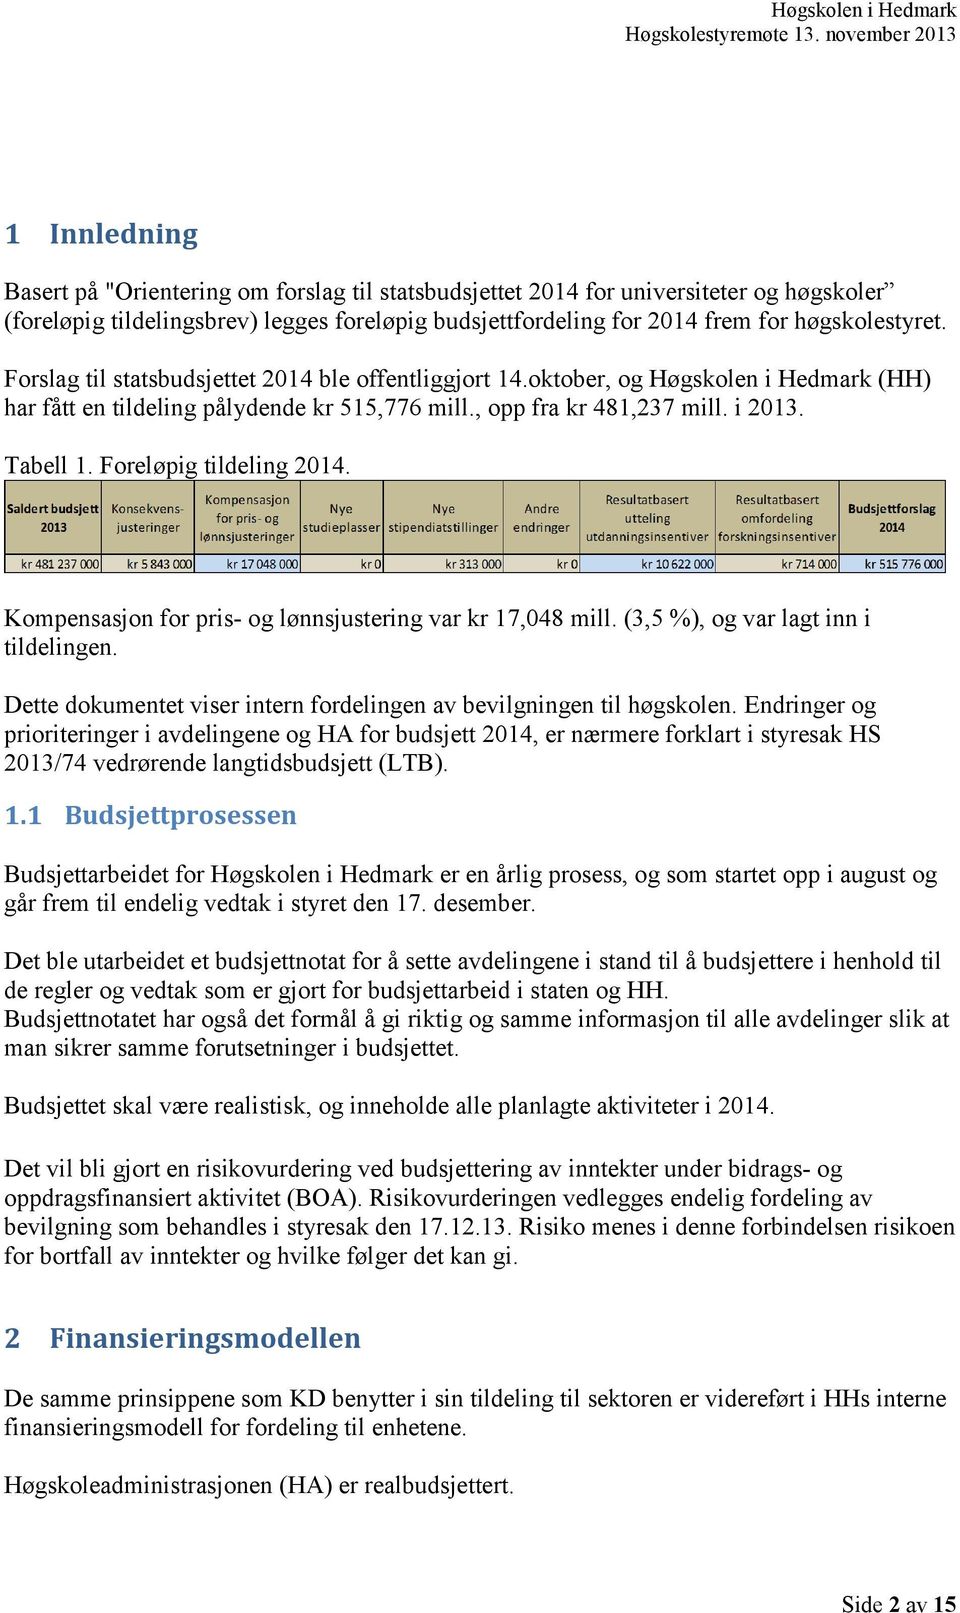 høgskolestyret. Forslag til statsbudsjettet 2014 ble offentliggjort 14.oktober, og Høgskolen i Hedmark (HH) har fått en tildeling pålydende kr 515,776 mill., opp fra kr 481,237 mill. i 2013. Tabell 1.